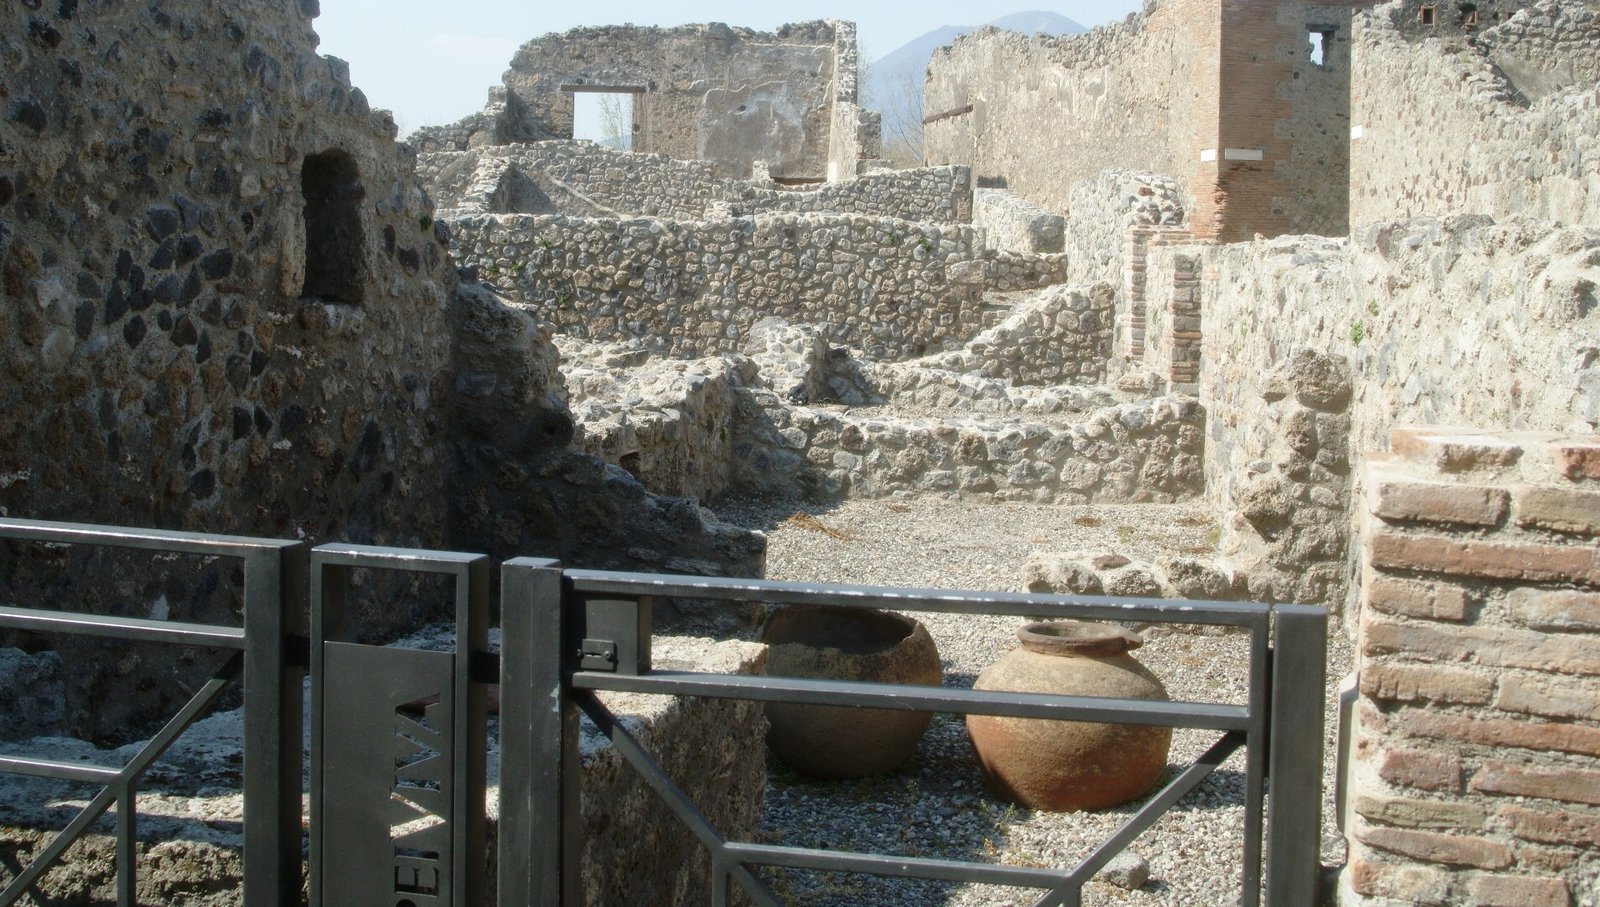 Pompeii, ouritalianjourney.com